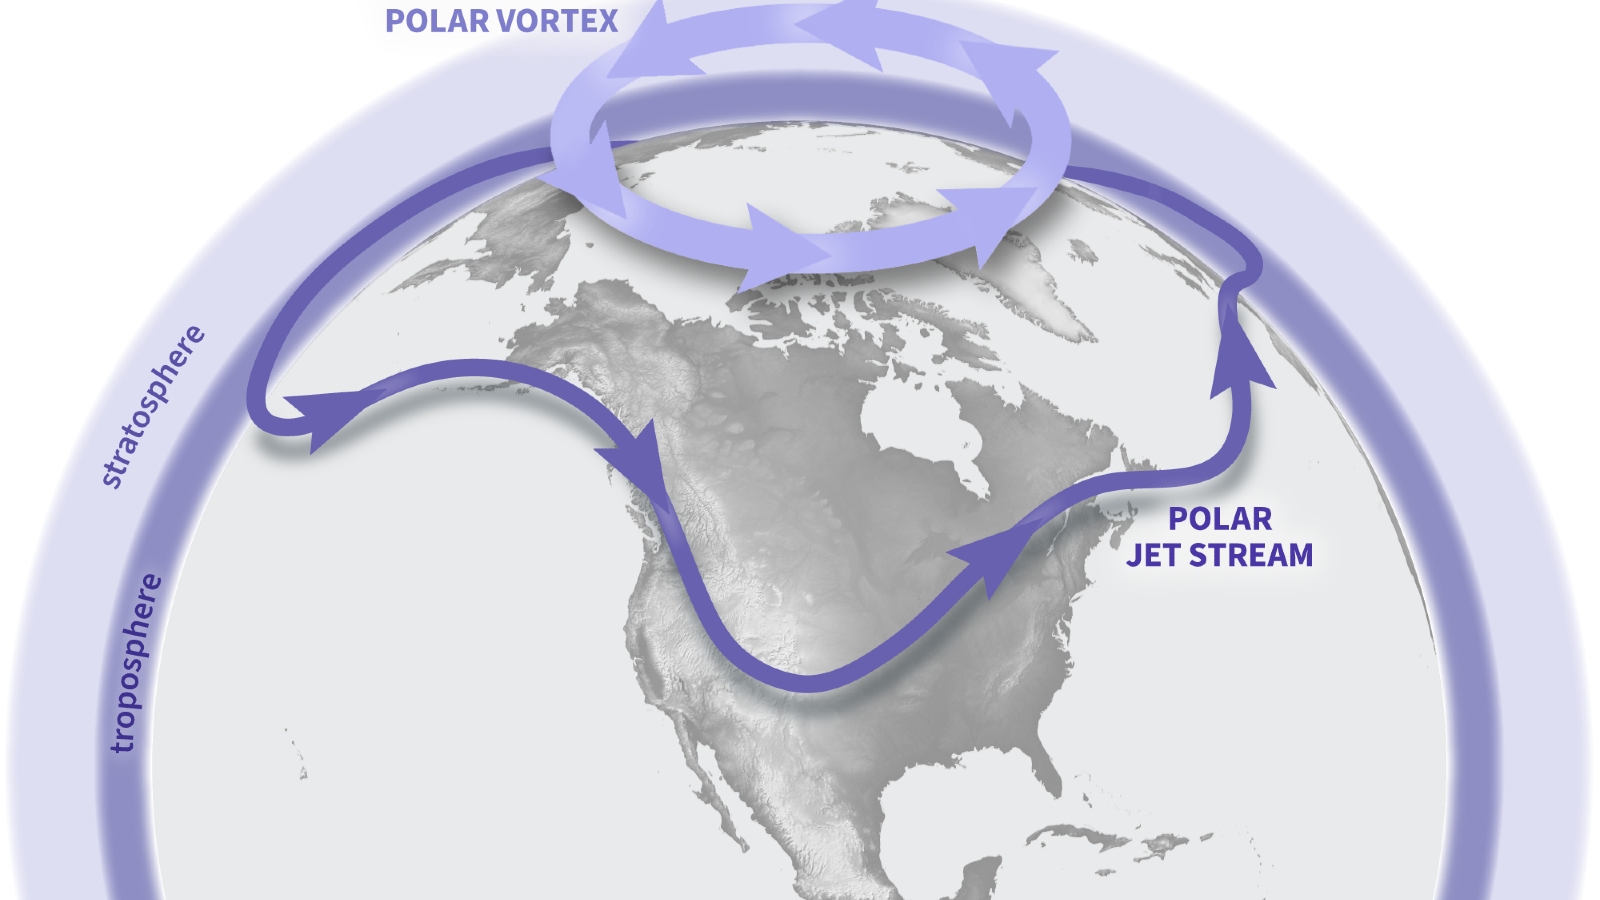 El vórtice polar “retrocede” sobre el Polo Norte después de un importante evento de inversión